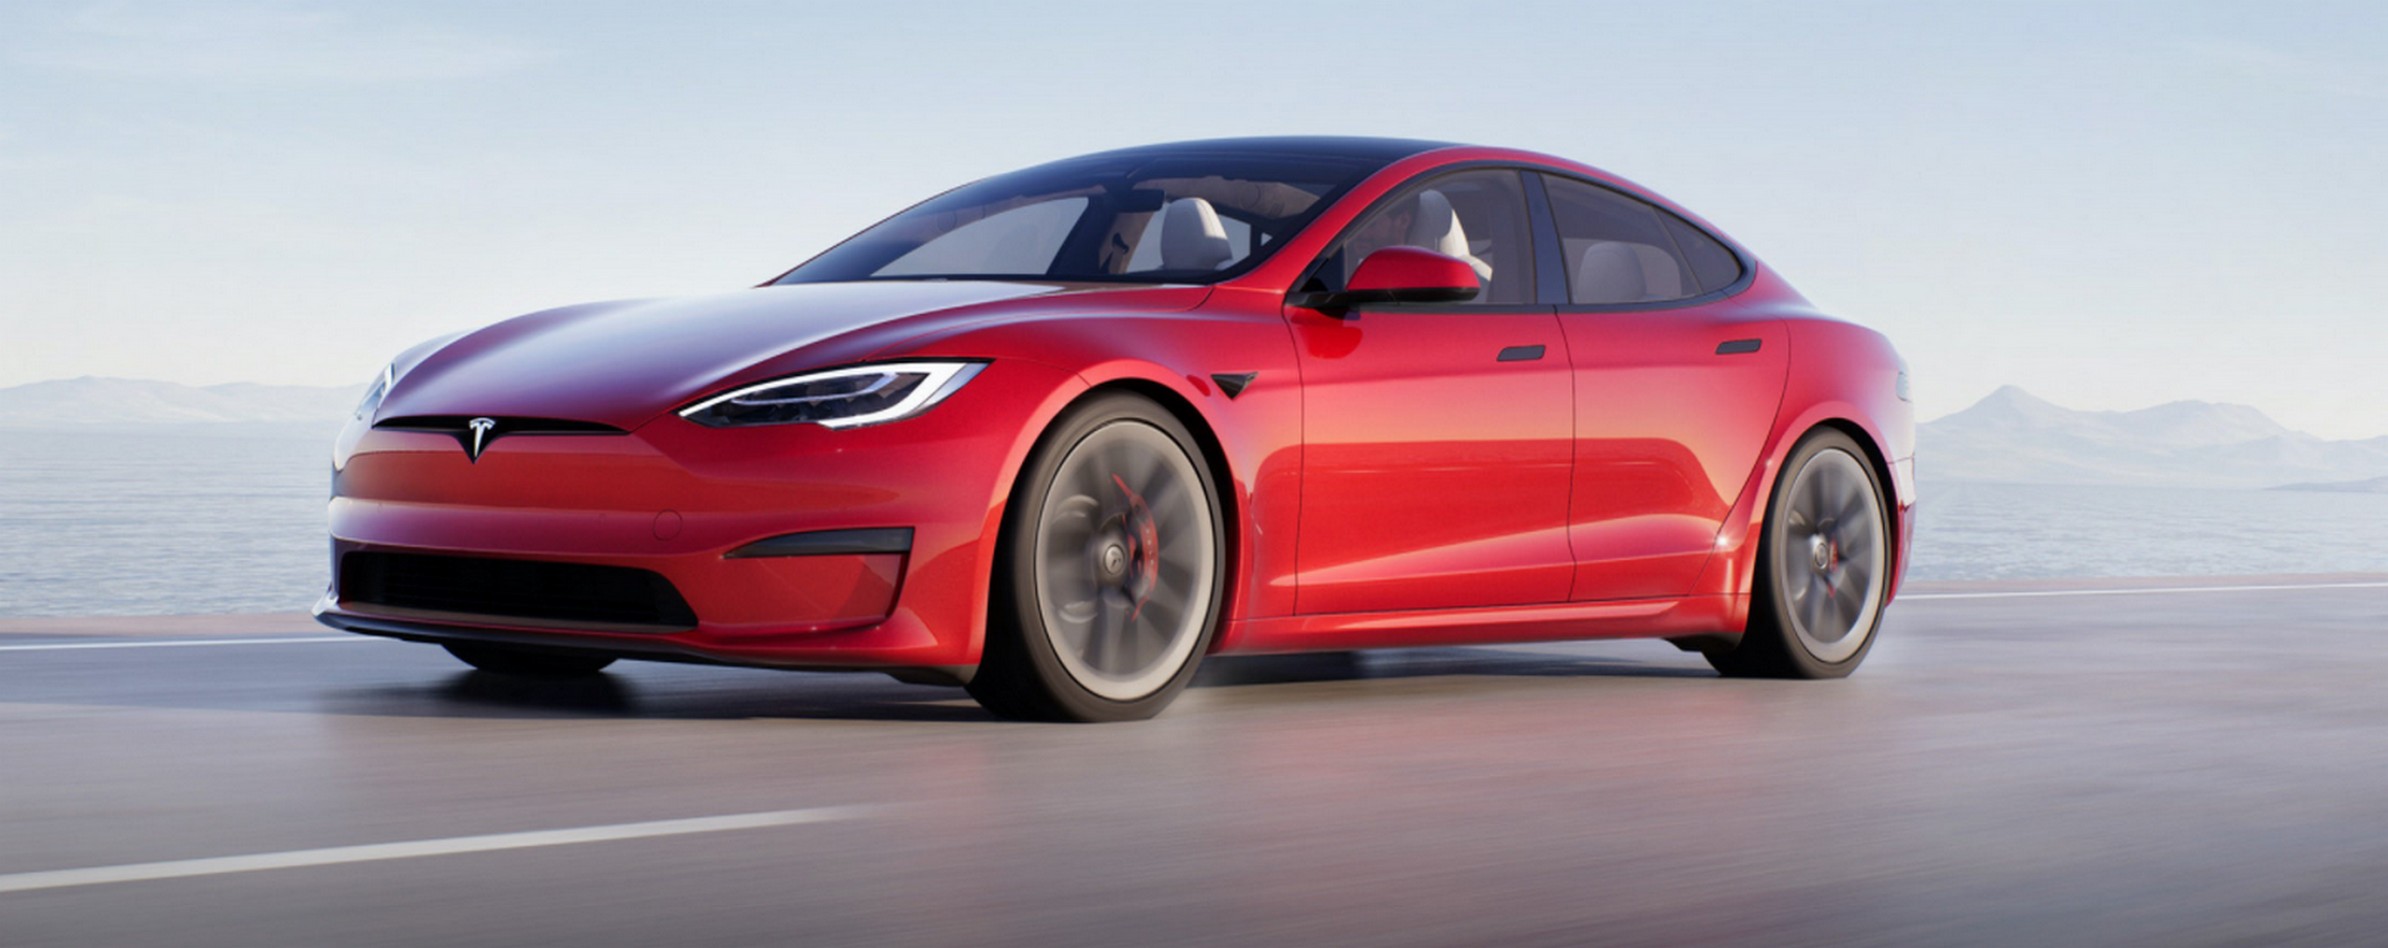 La carrosserie de la Tesla Model S 2021 a évolué par petites touches. © Tesla